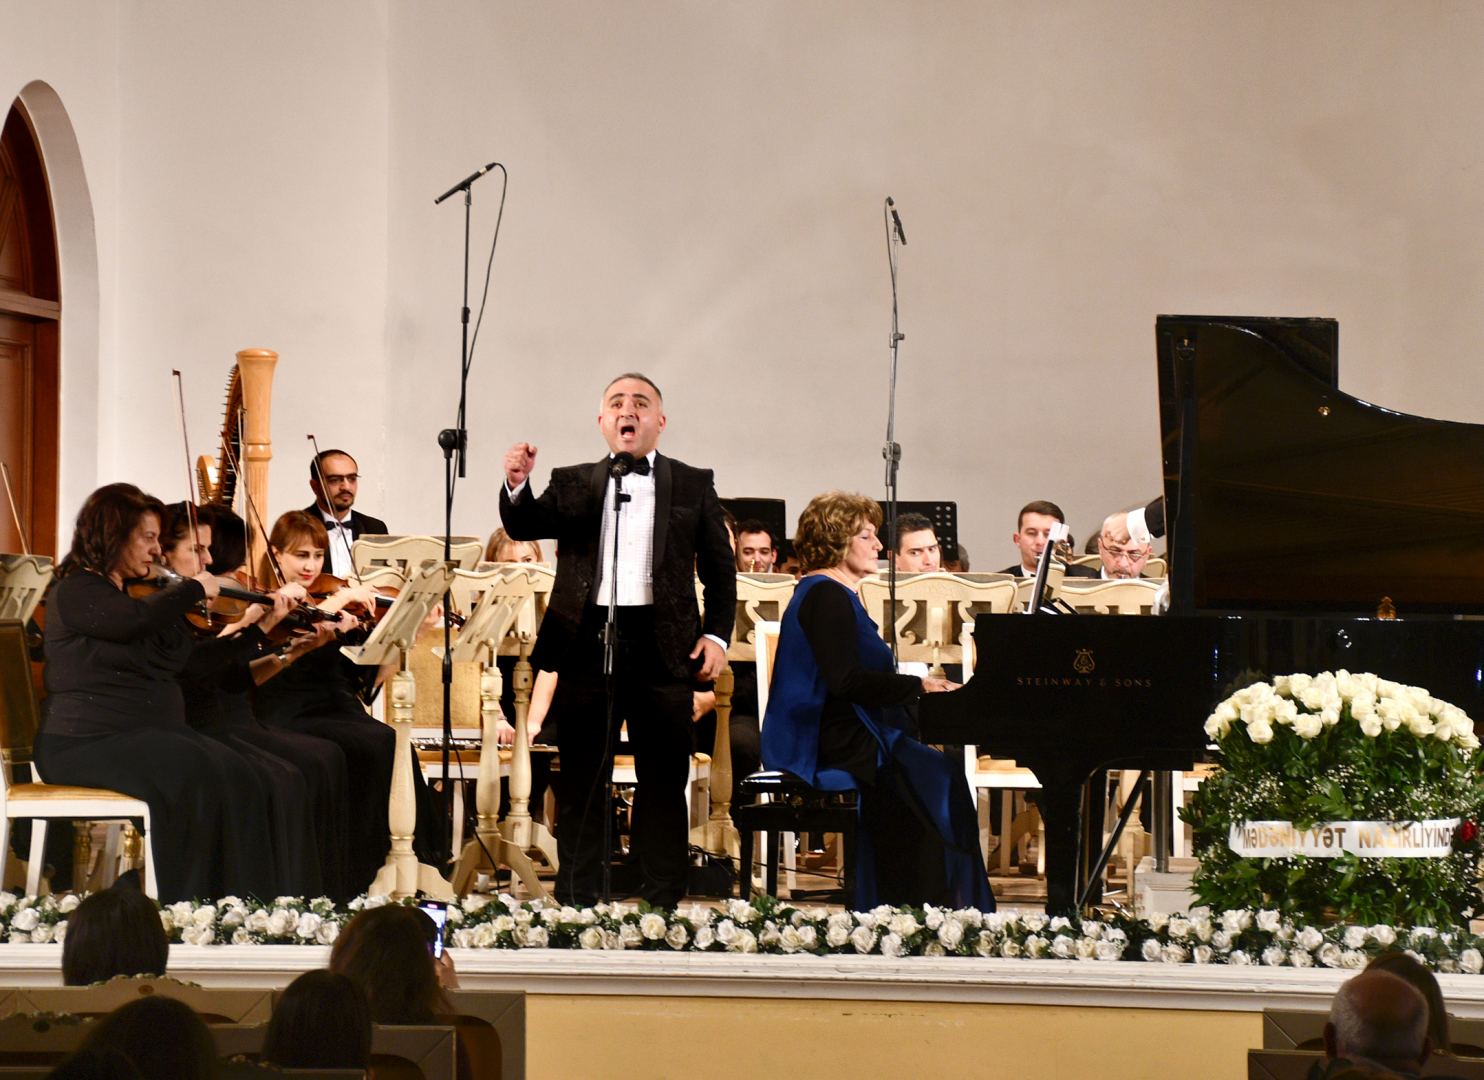 Незабываемые мгновения… Концерт в Баку в честь юбилея Эльнары Дадашевой (ФОТО/ВИДЕО)